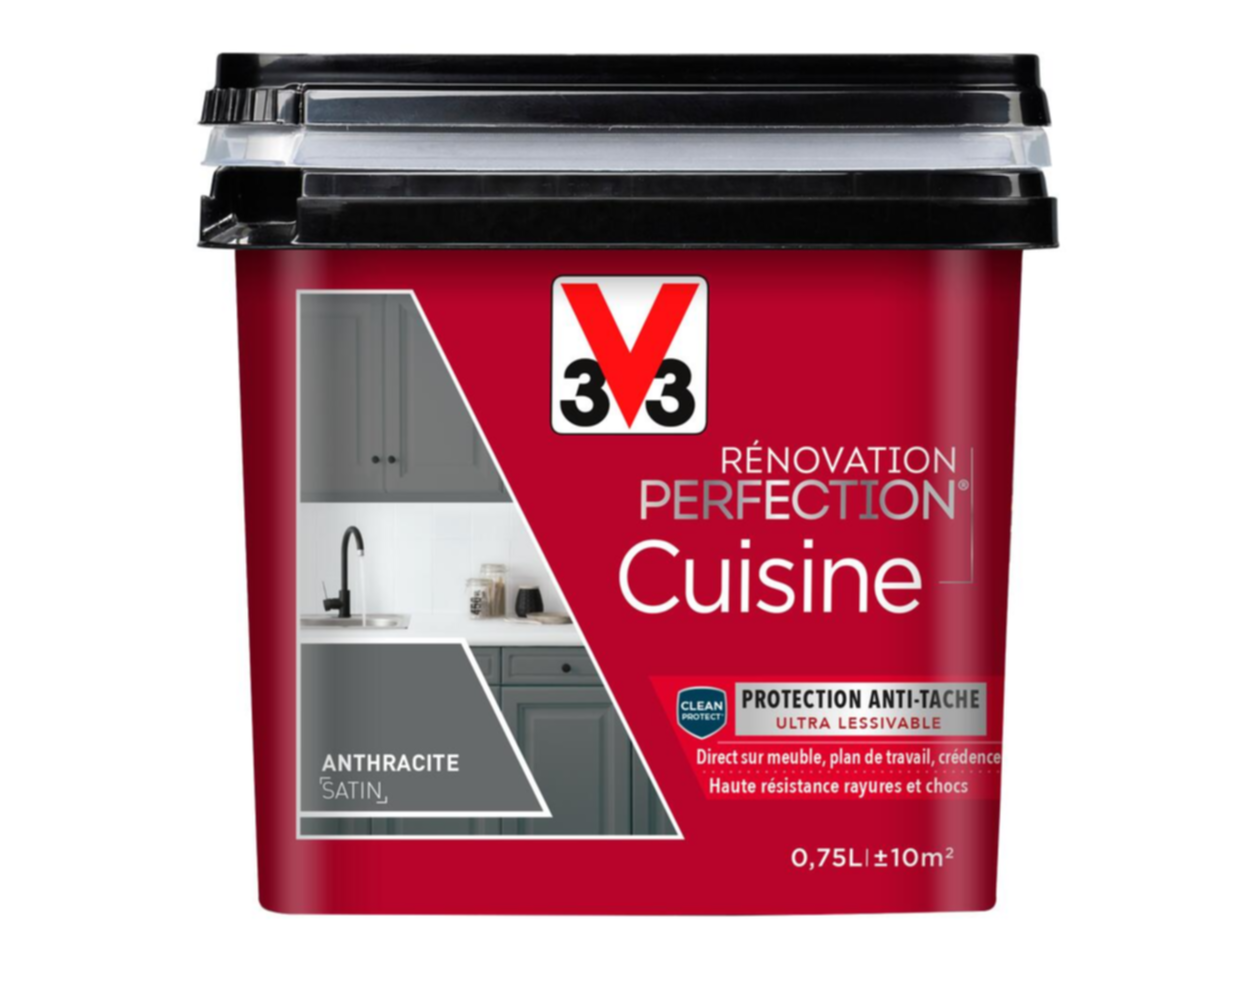 Peinture rénovation cuisine Perfection gris anthracite satin 0,75l - V33